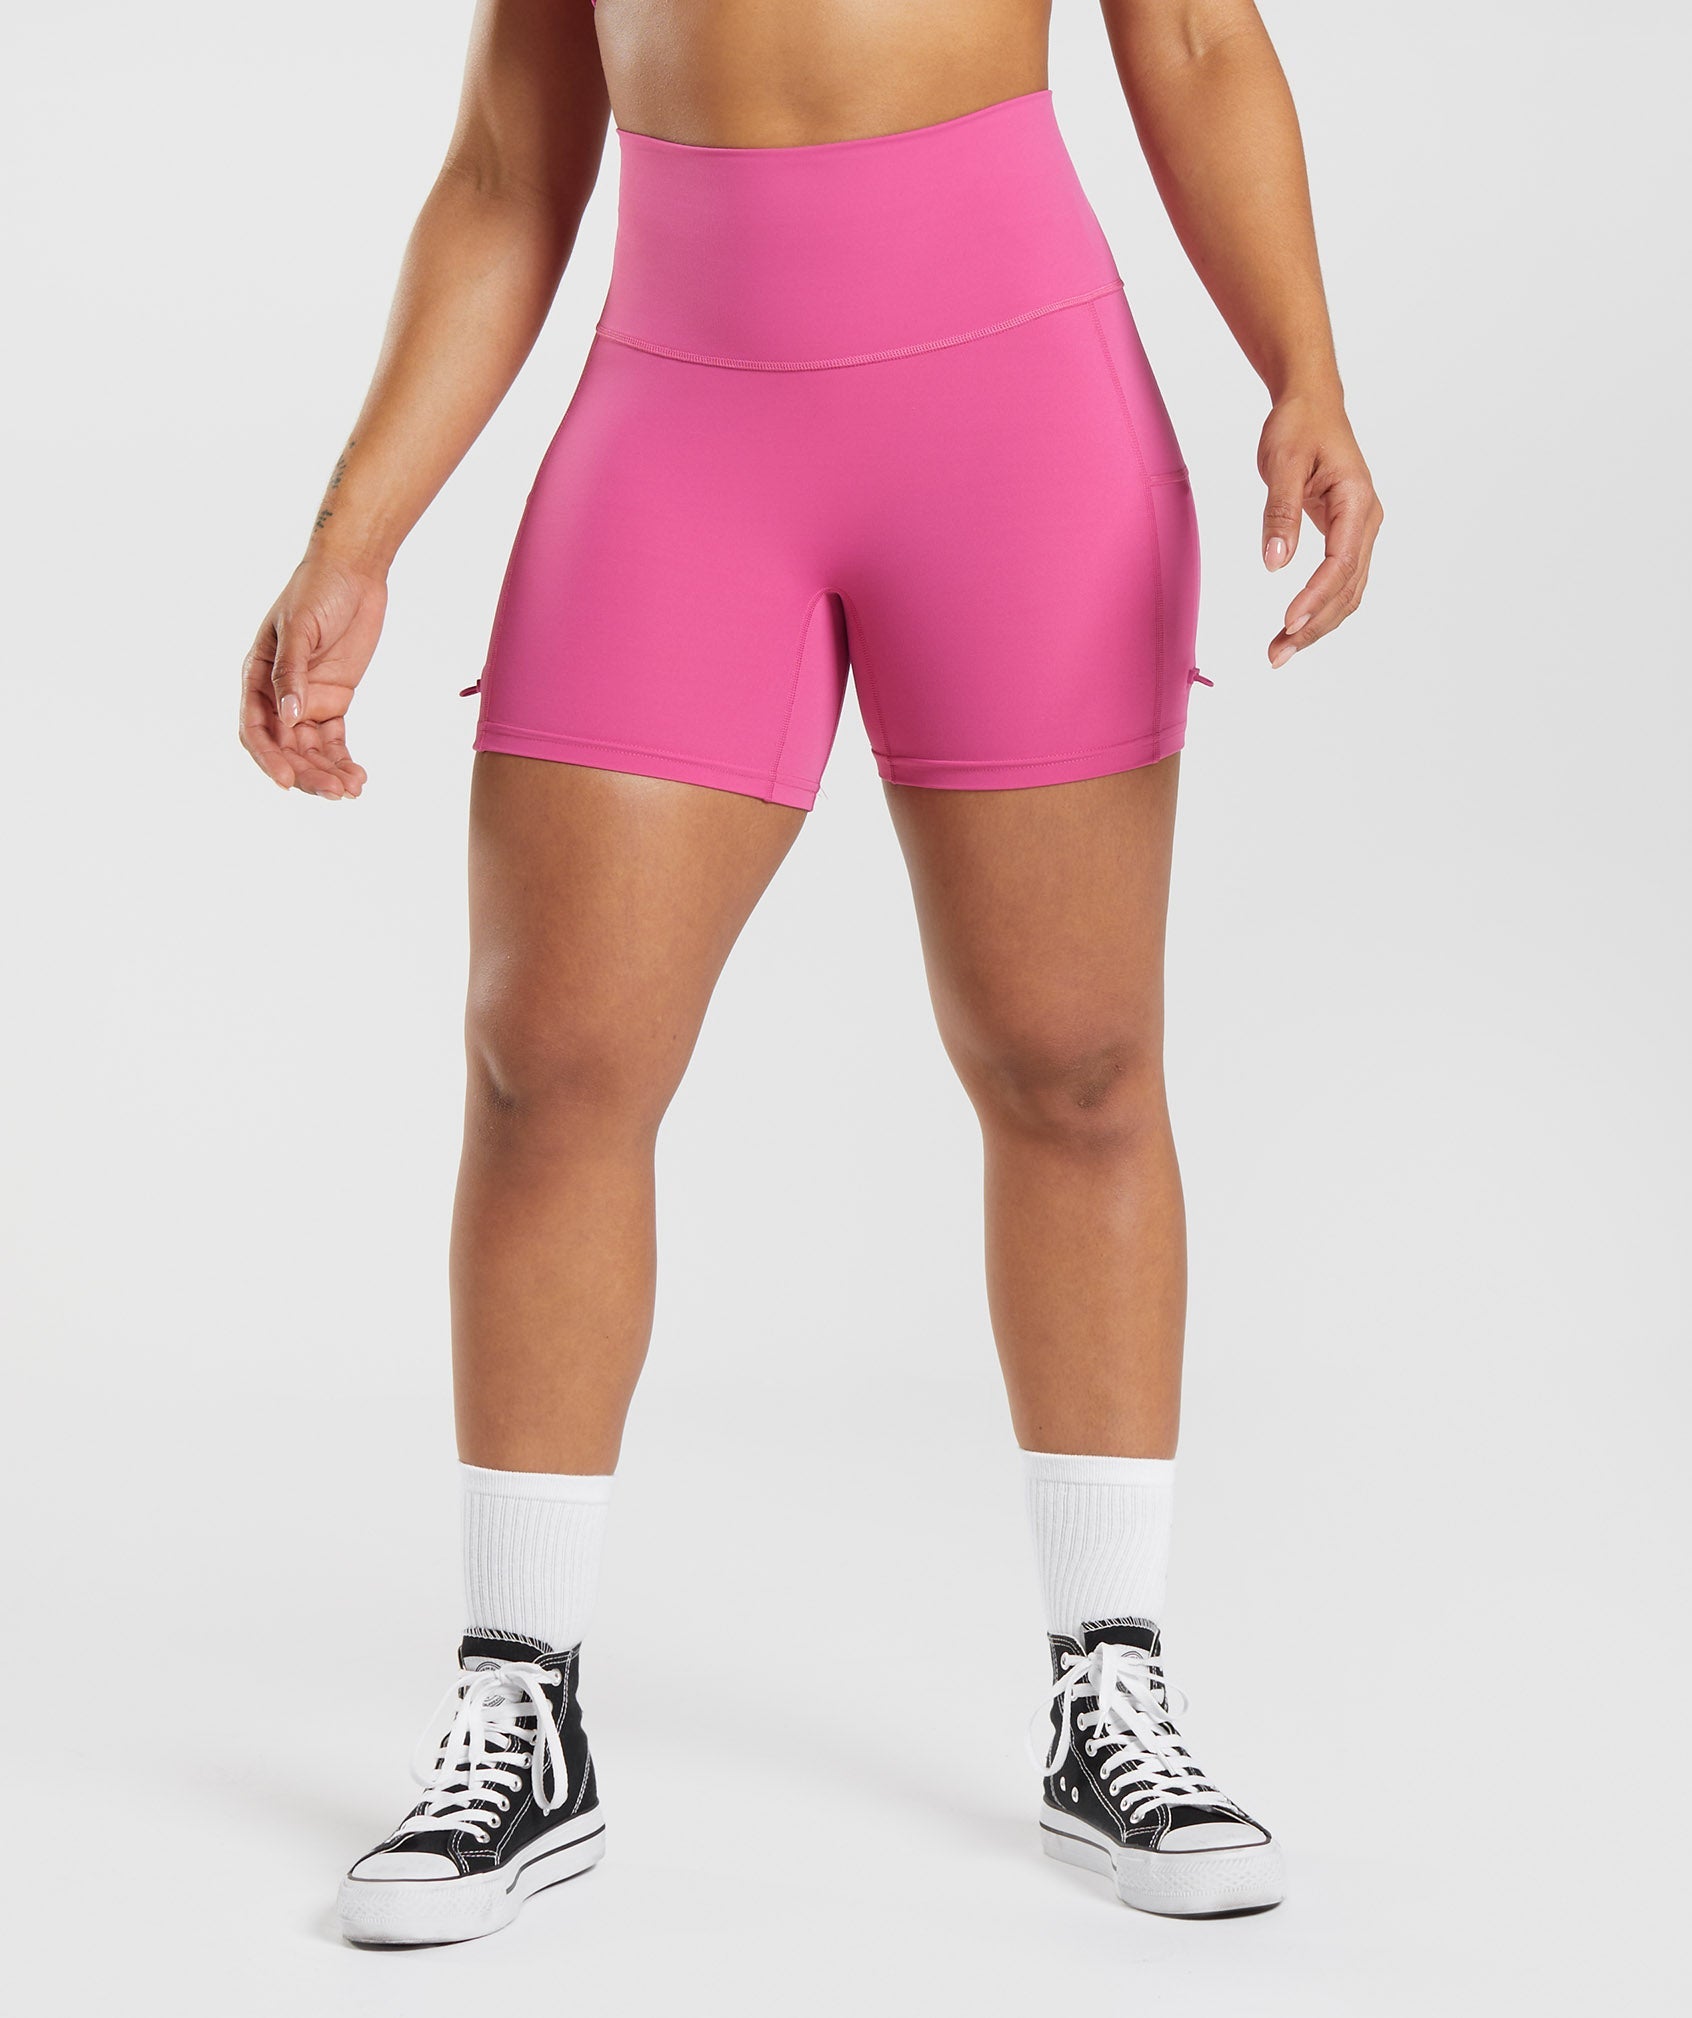 Gymshark, Shorts, Nwot Gymshark Pink Ombr Shorts